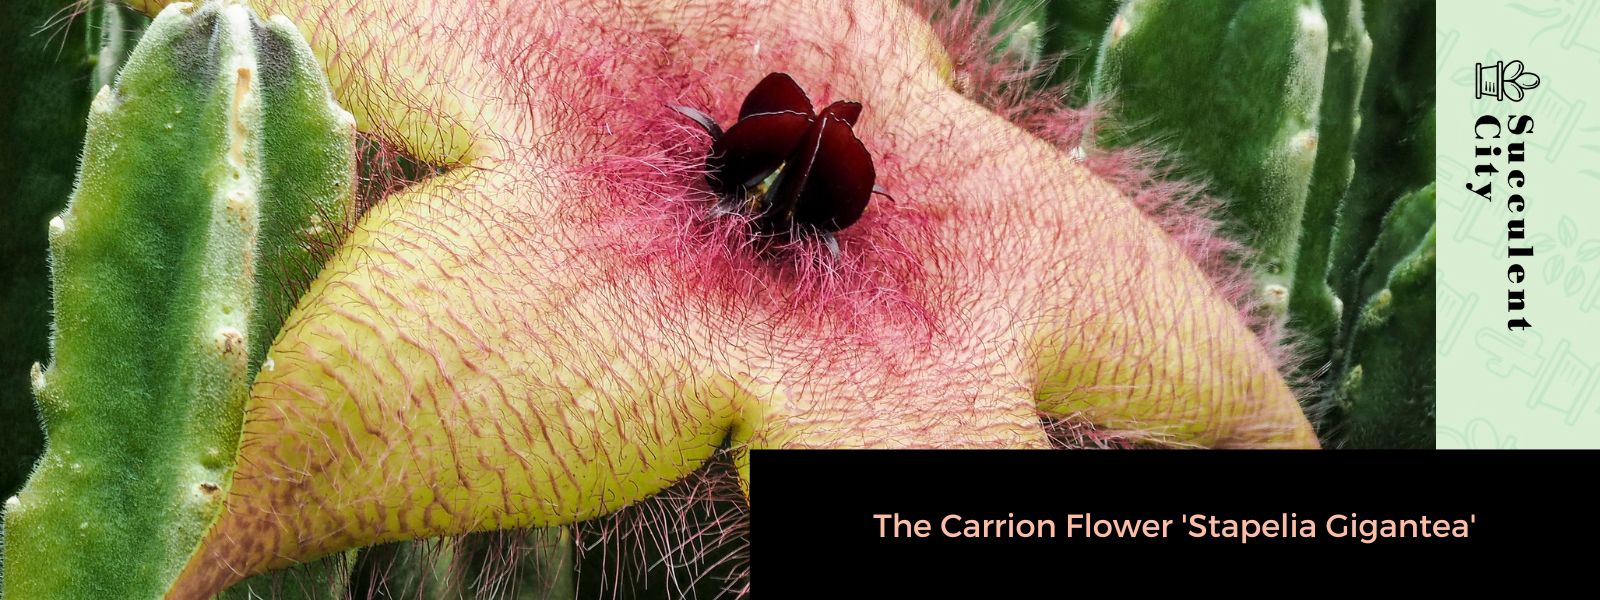 La flor carroñera 'Stapelia gigantea'